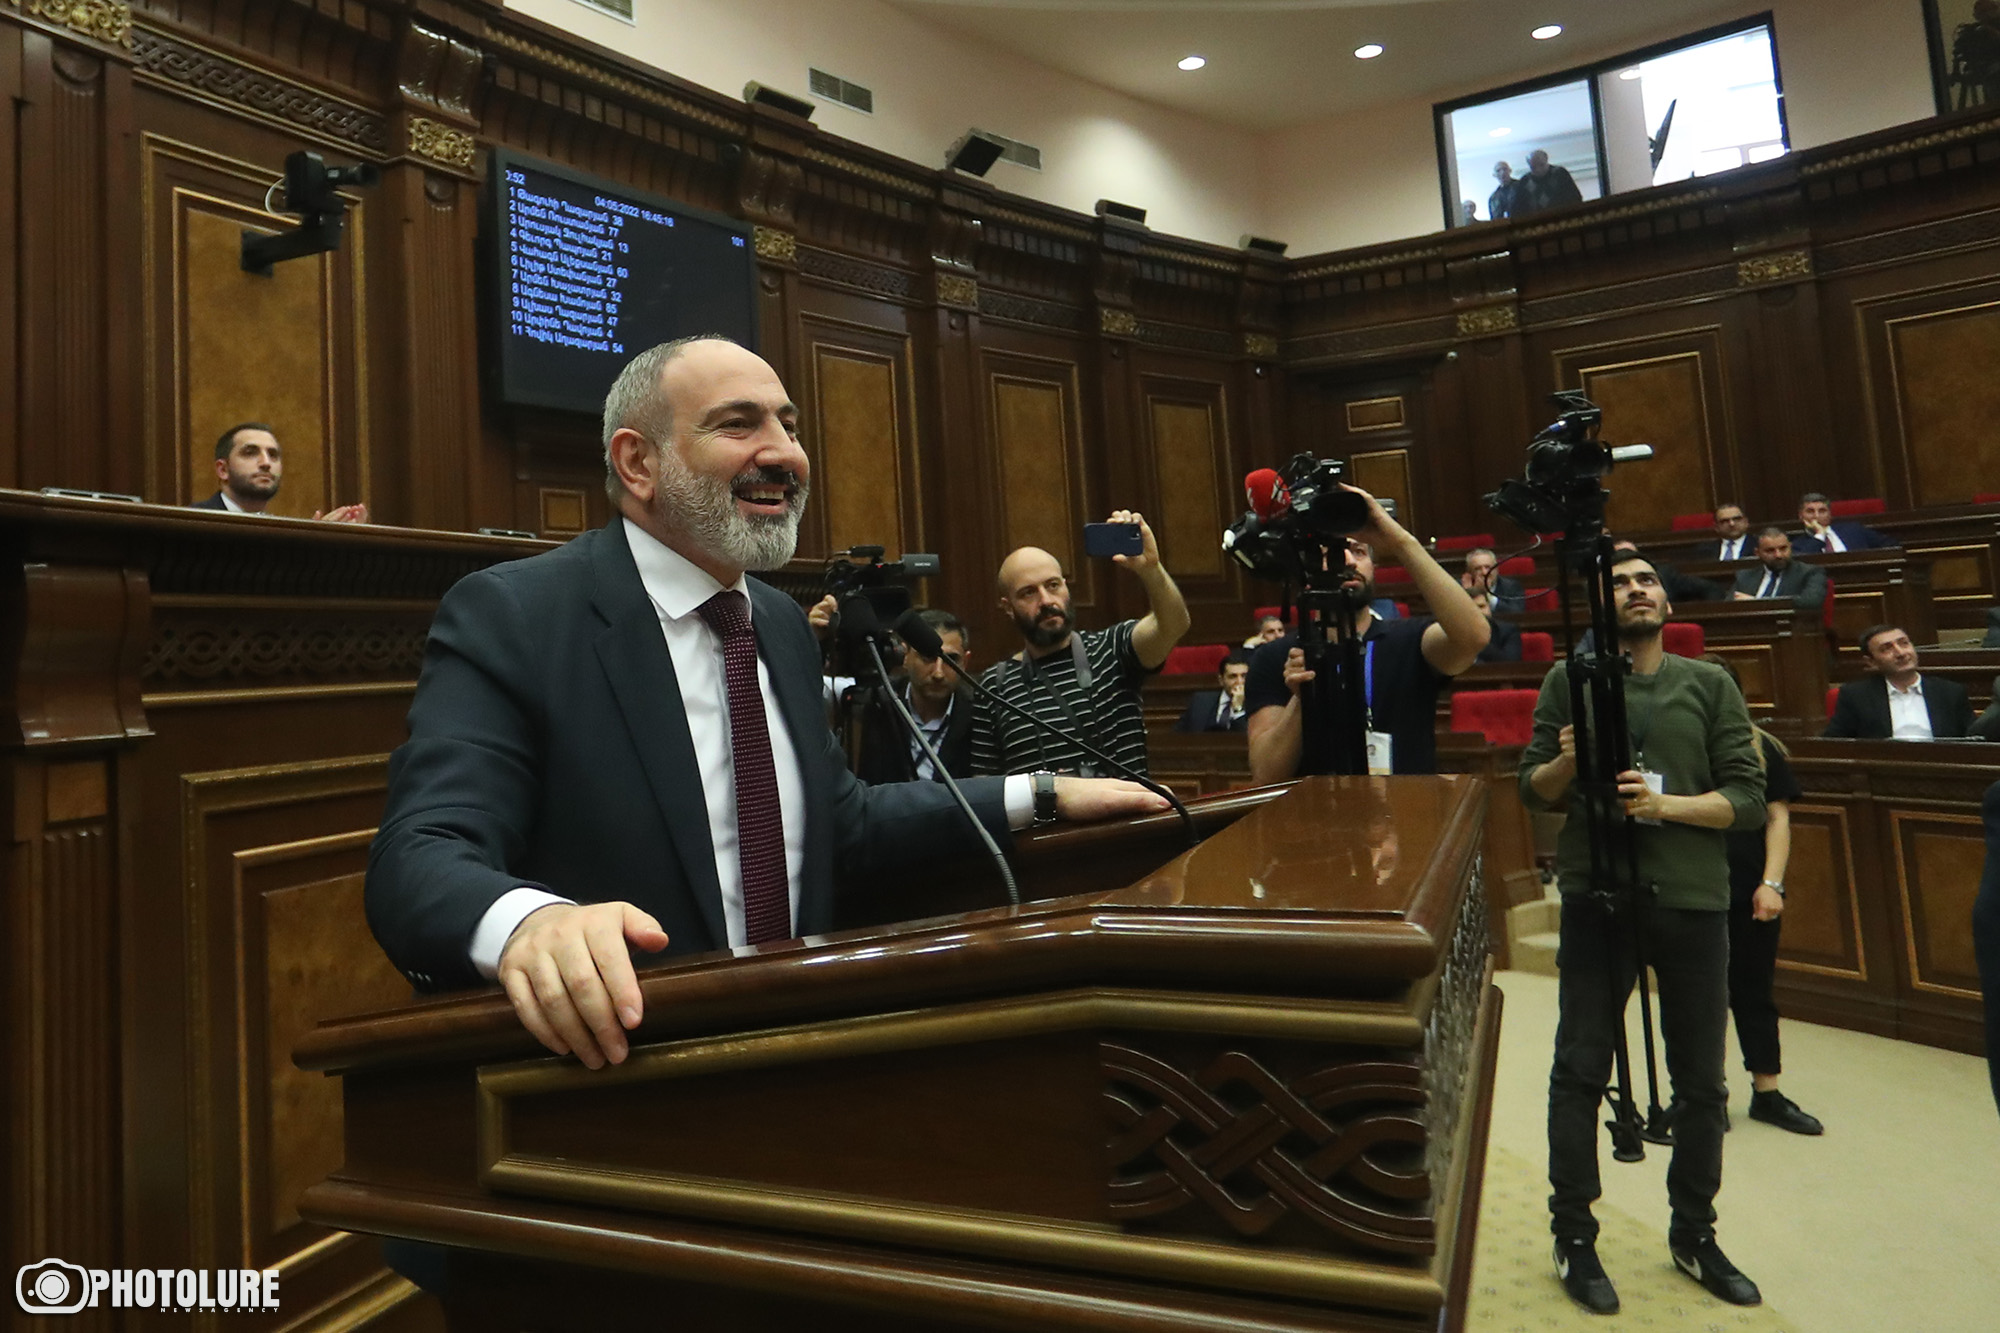 Pashinyan talks POWs, enclaves, Karabakh status in parliament speech